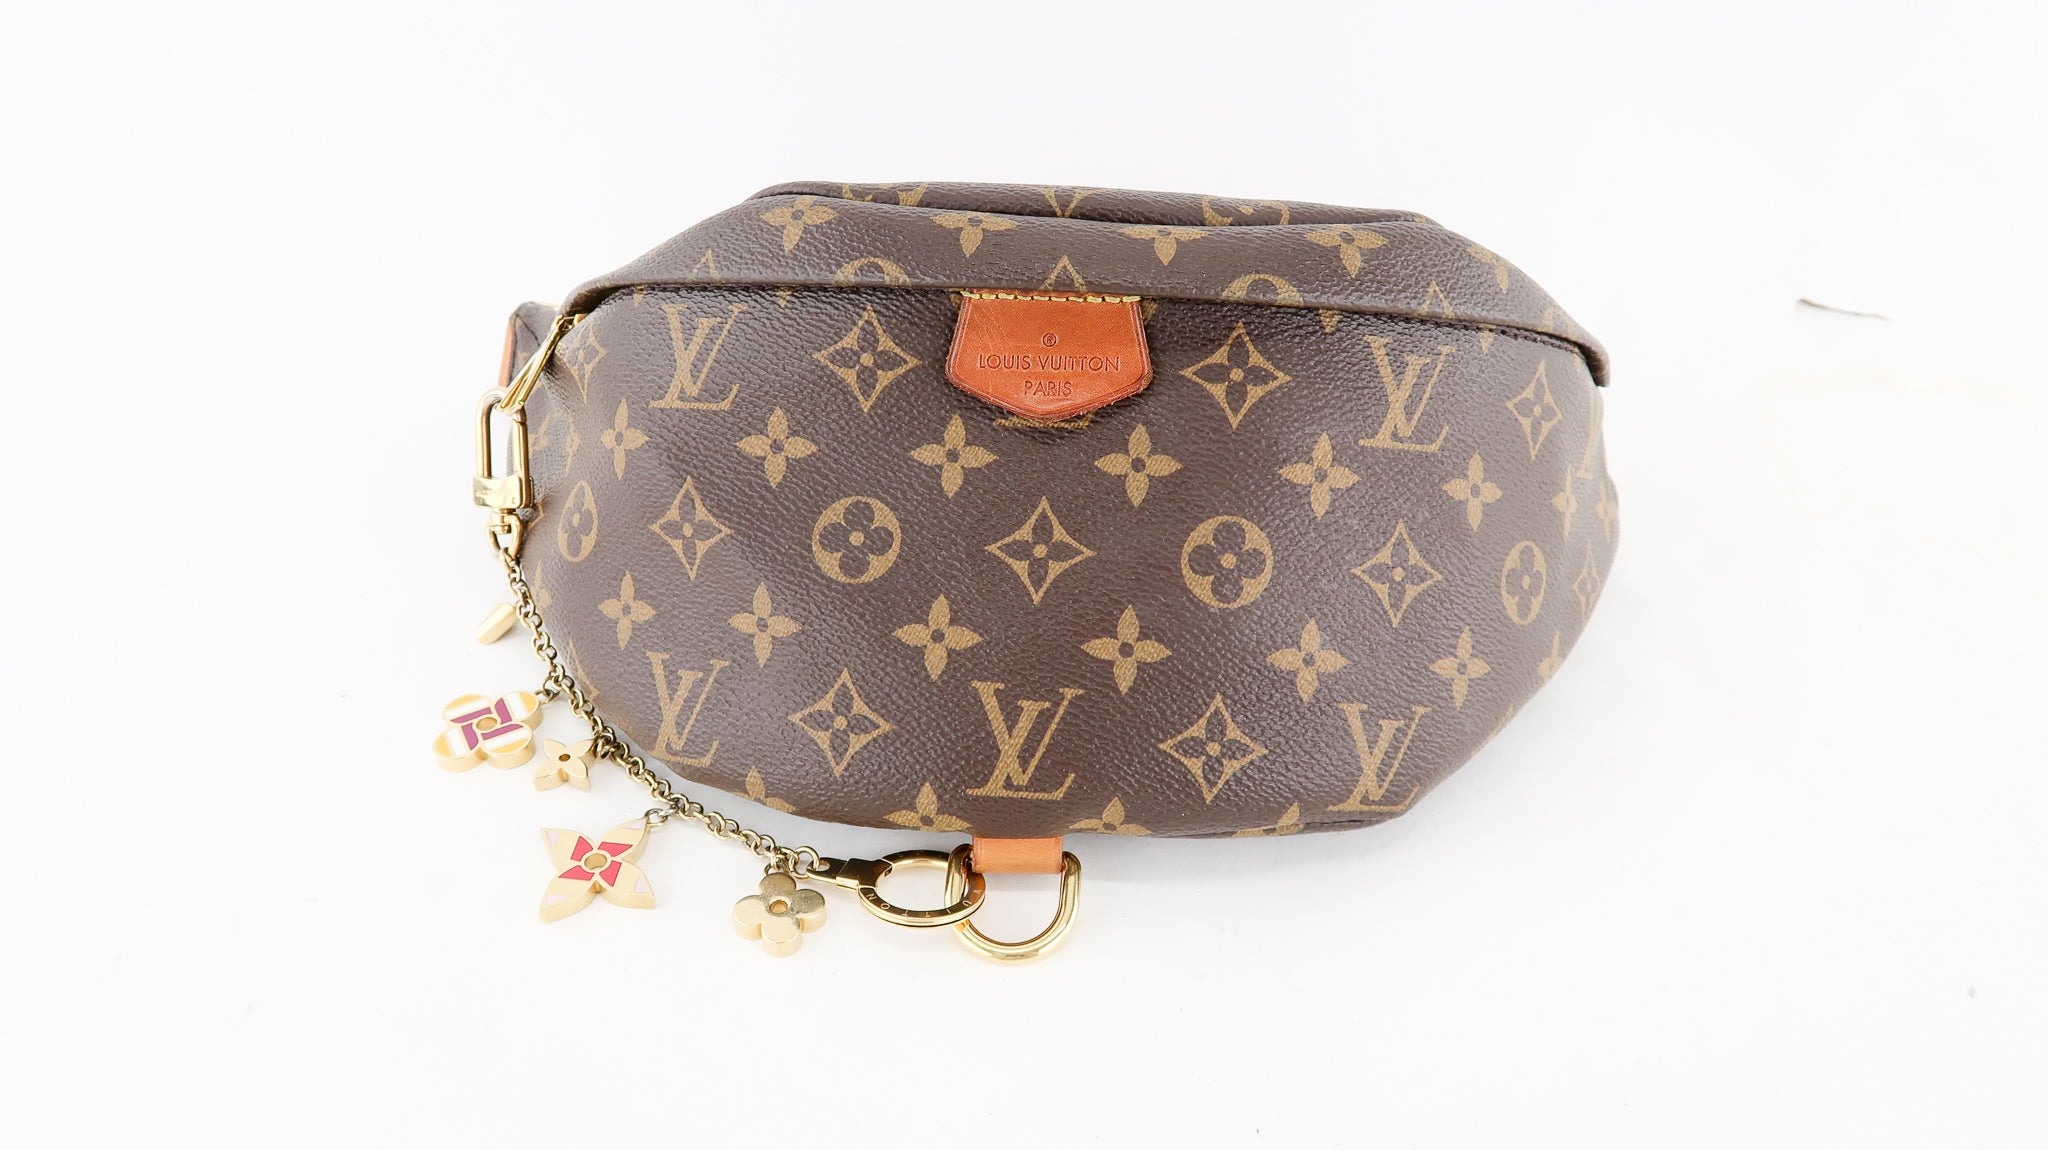 Louis Vuitton Spring Street Bag Charm – DAC